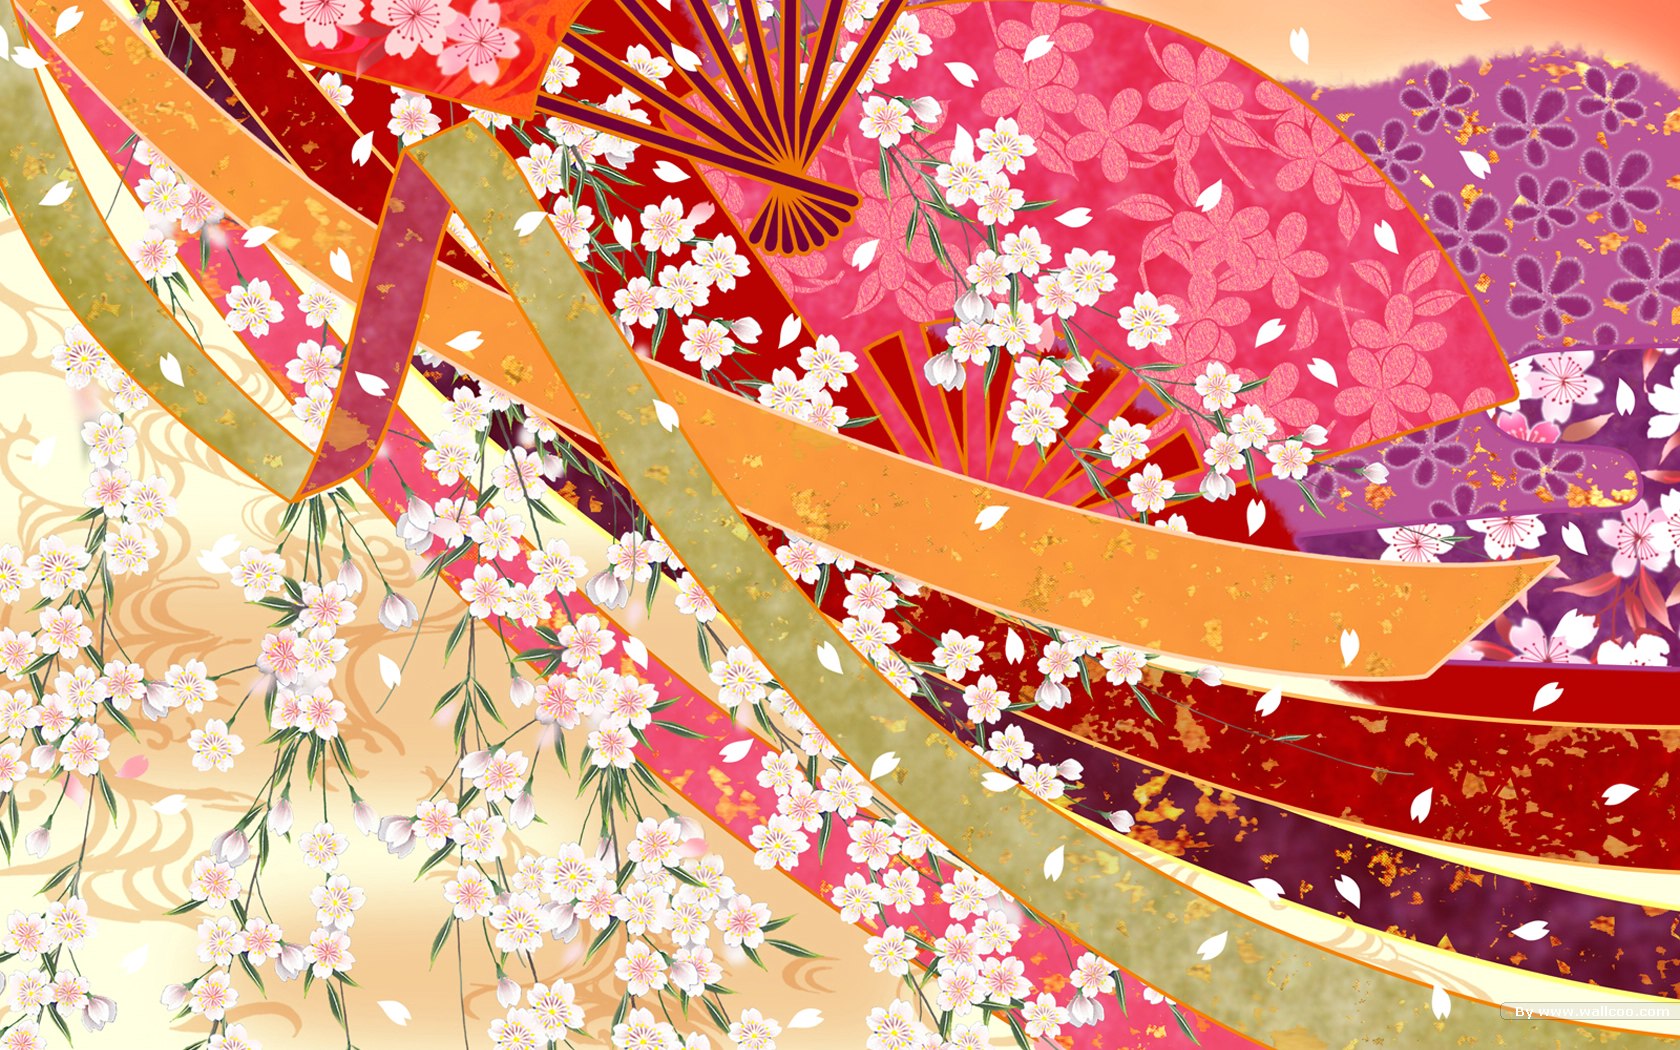 壁纸1680 1050日本风格色彩与图案设计壁纸壁纸 日本风格色彩与图案设计壁纸壁纸图片 创意壁纸 创意图片素材 桌面壁纸